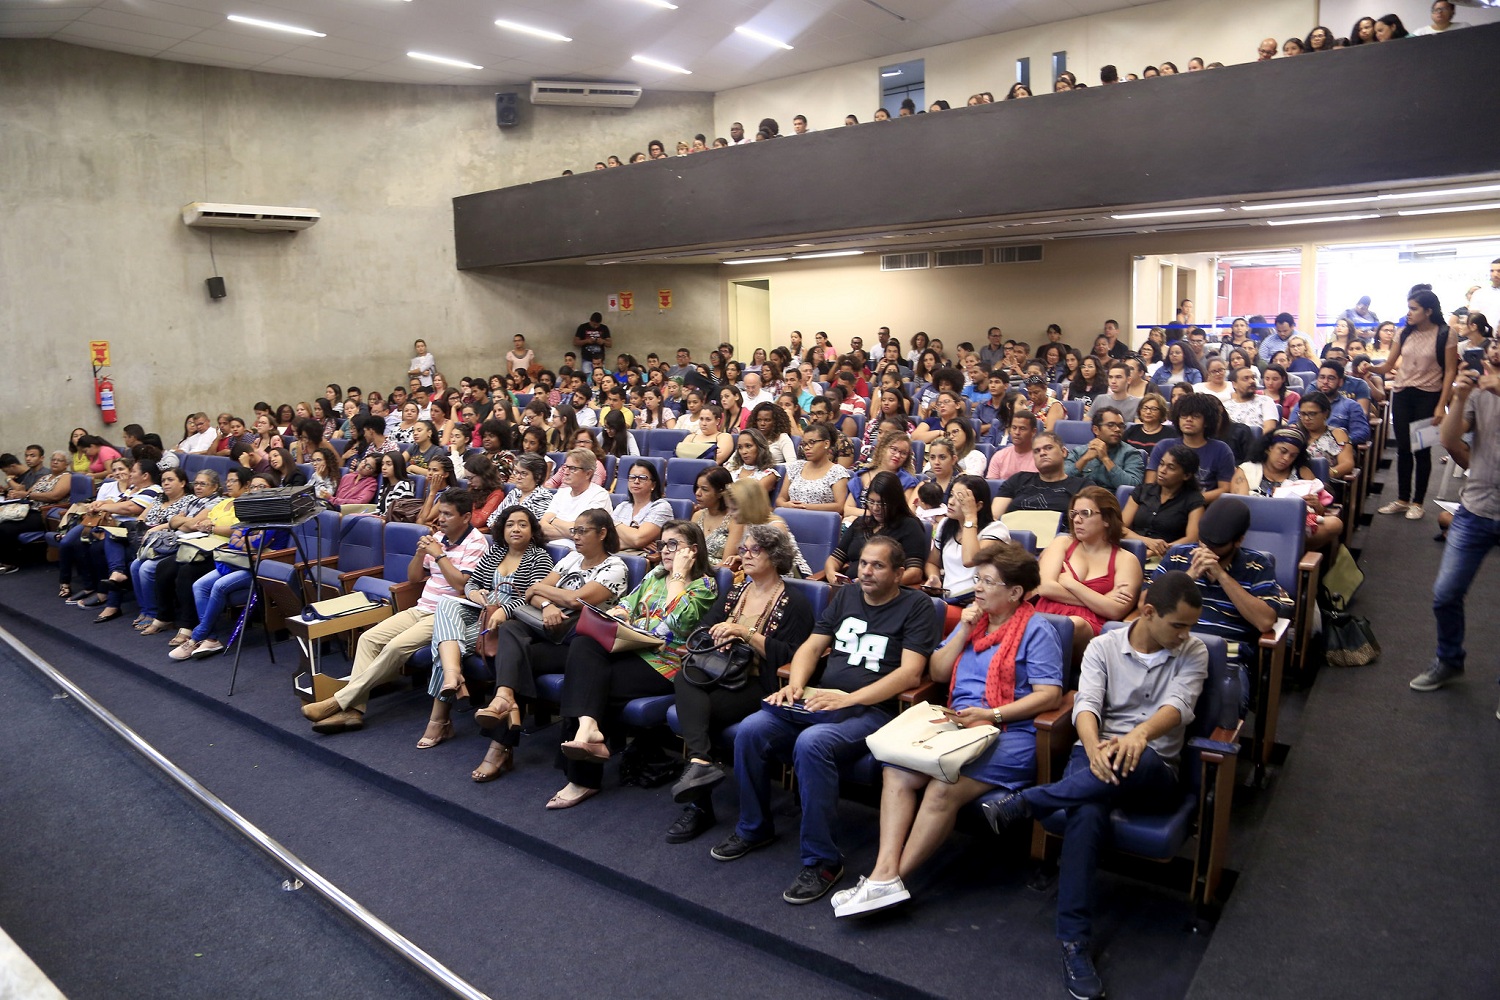 Evento ocorreu no auditório da Reitoria, campus de São Cristóvão. (fotos: Schirlene Reis/Ascom UFS)